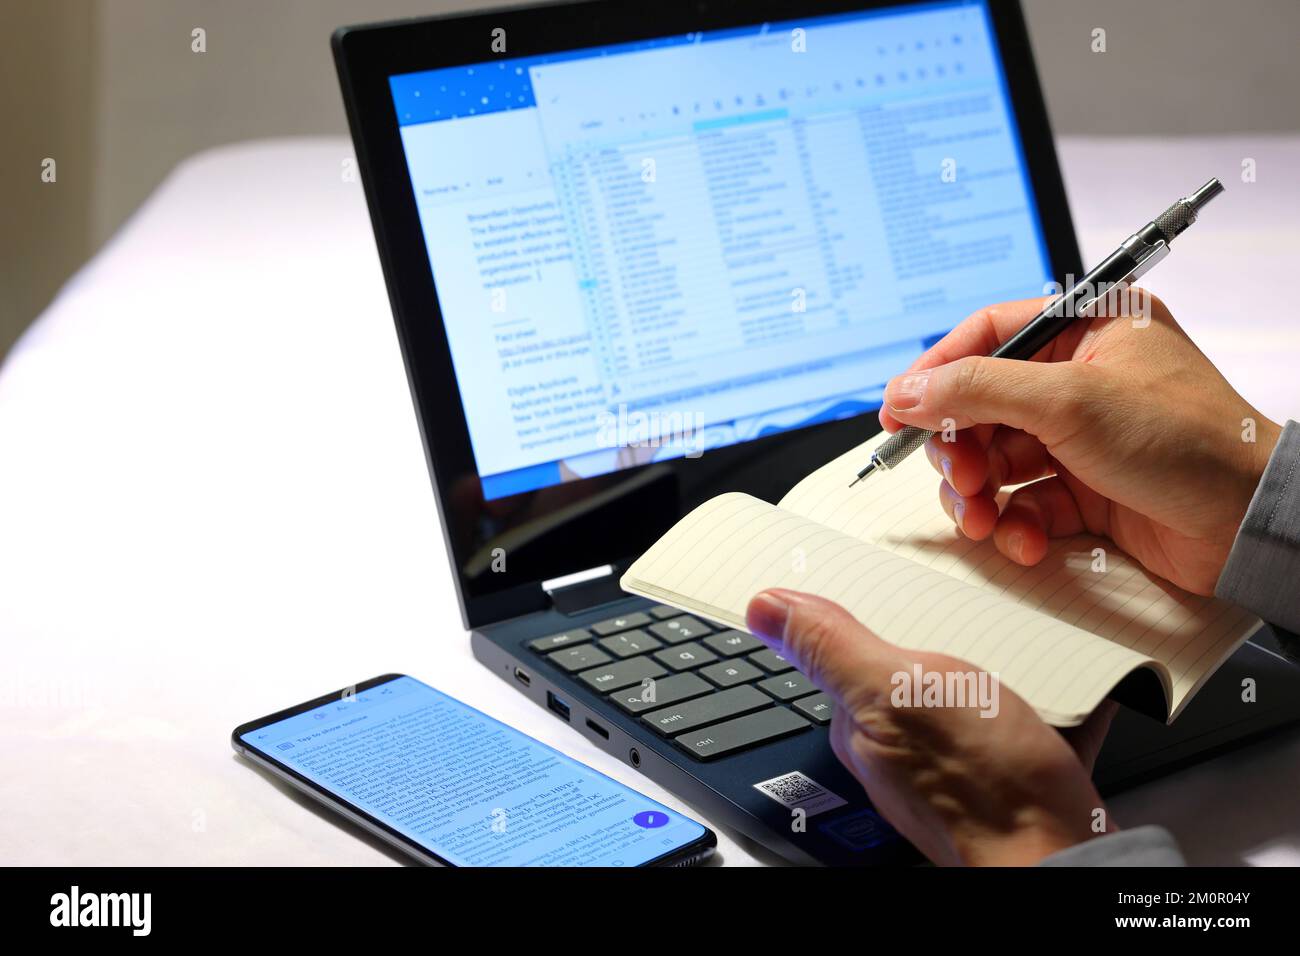 Gros plan des mains d'une personne tenant un crayon et un bloc-notes pour noter les informations des documents affichés sur un ordinateur portable. Banque D'Images